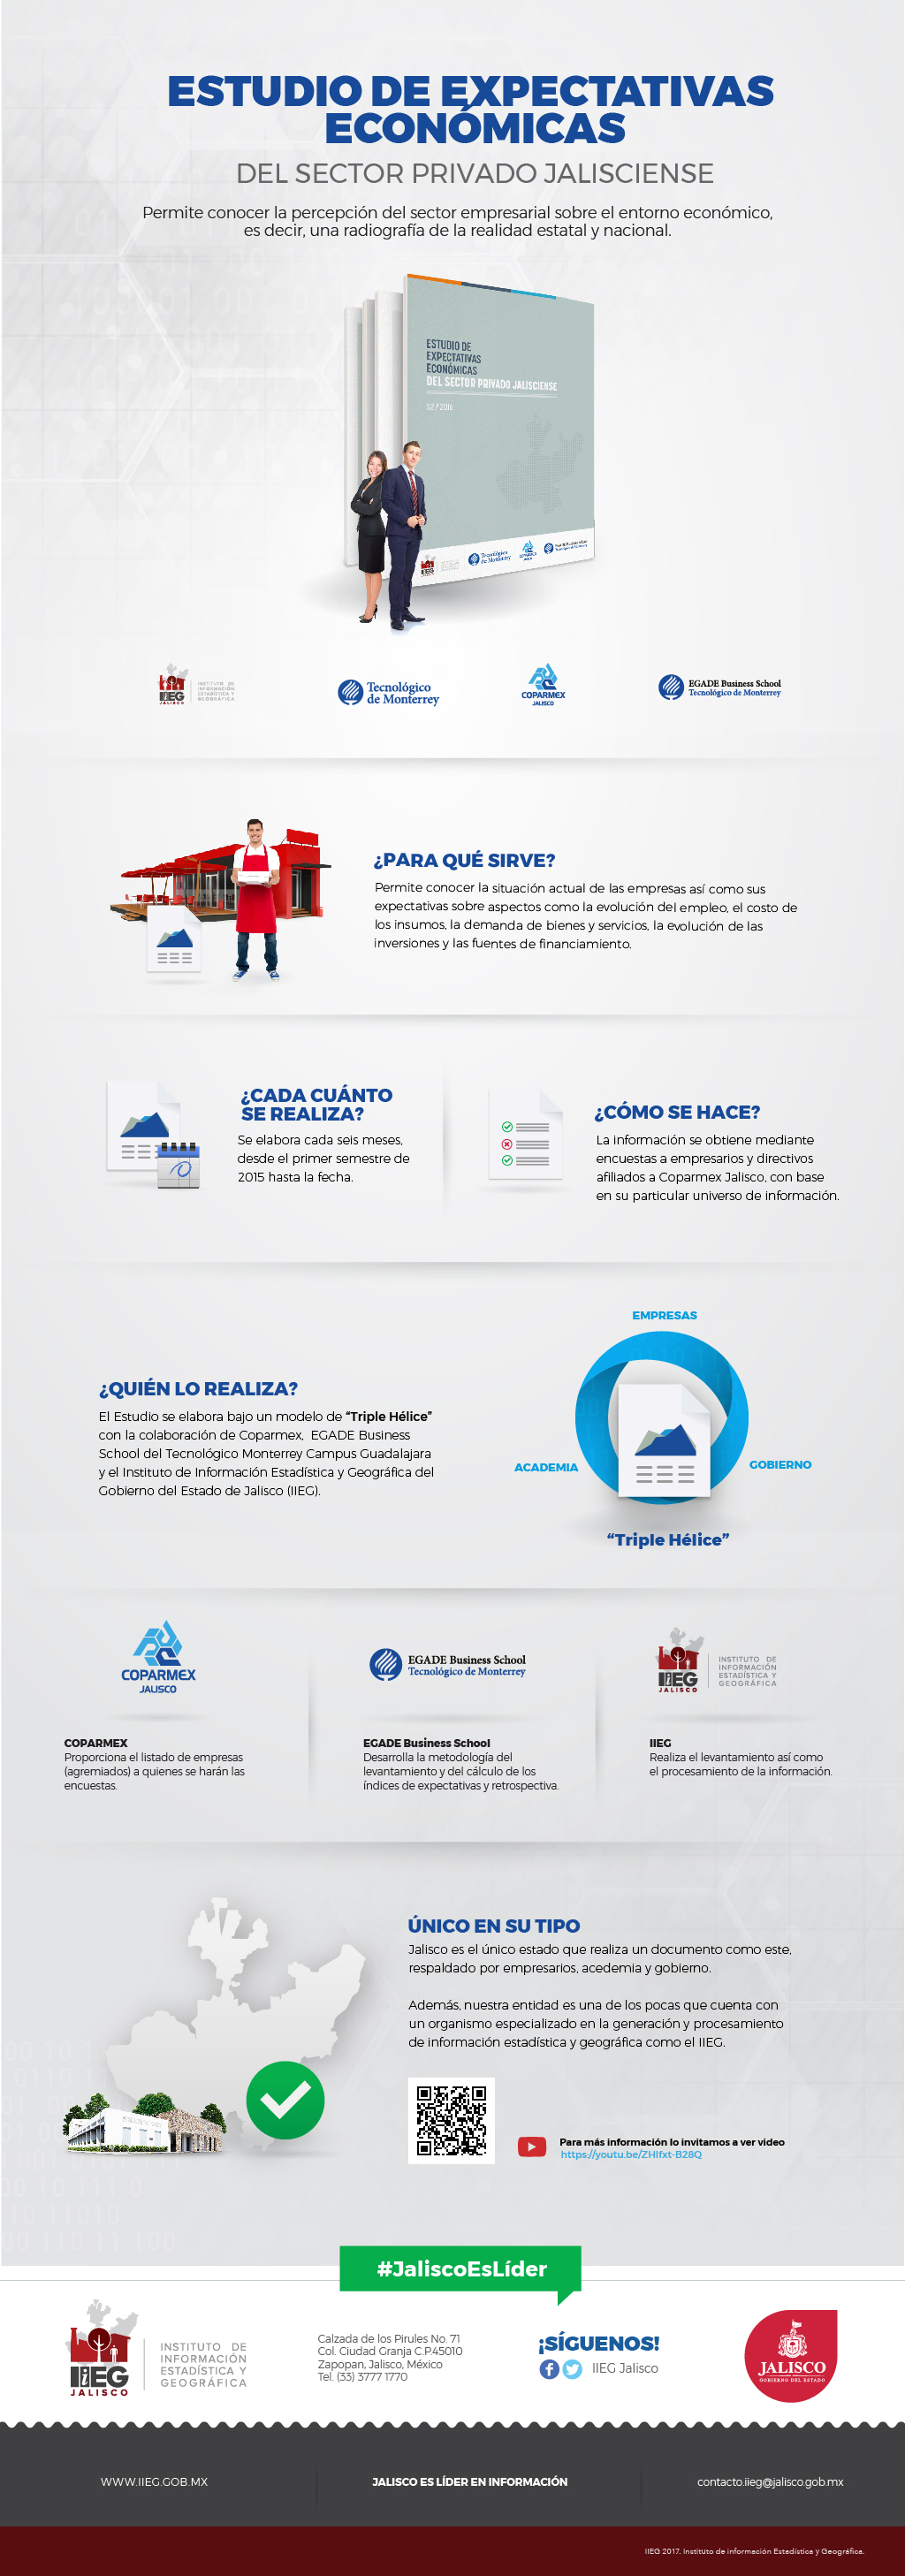 Infografía del Estudio de Expectativas Económicas Jalisco